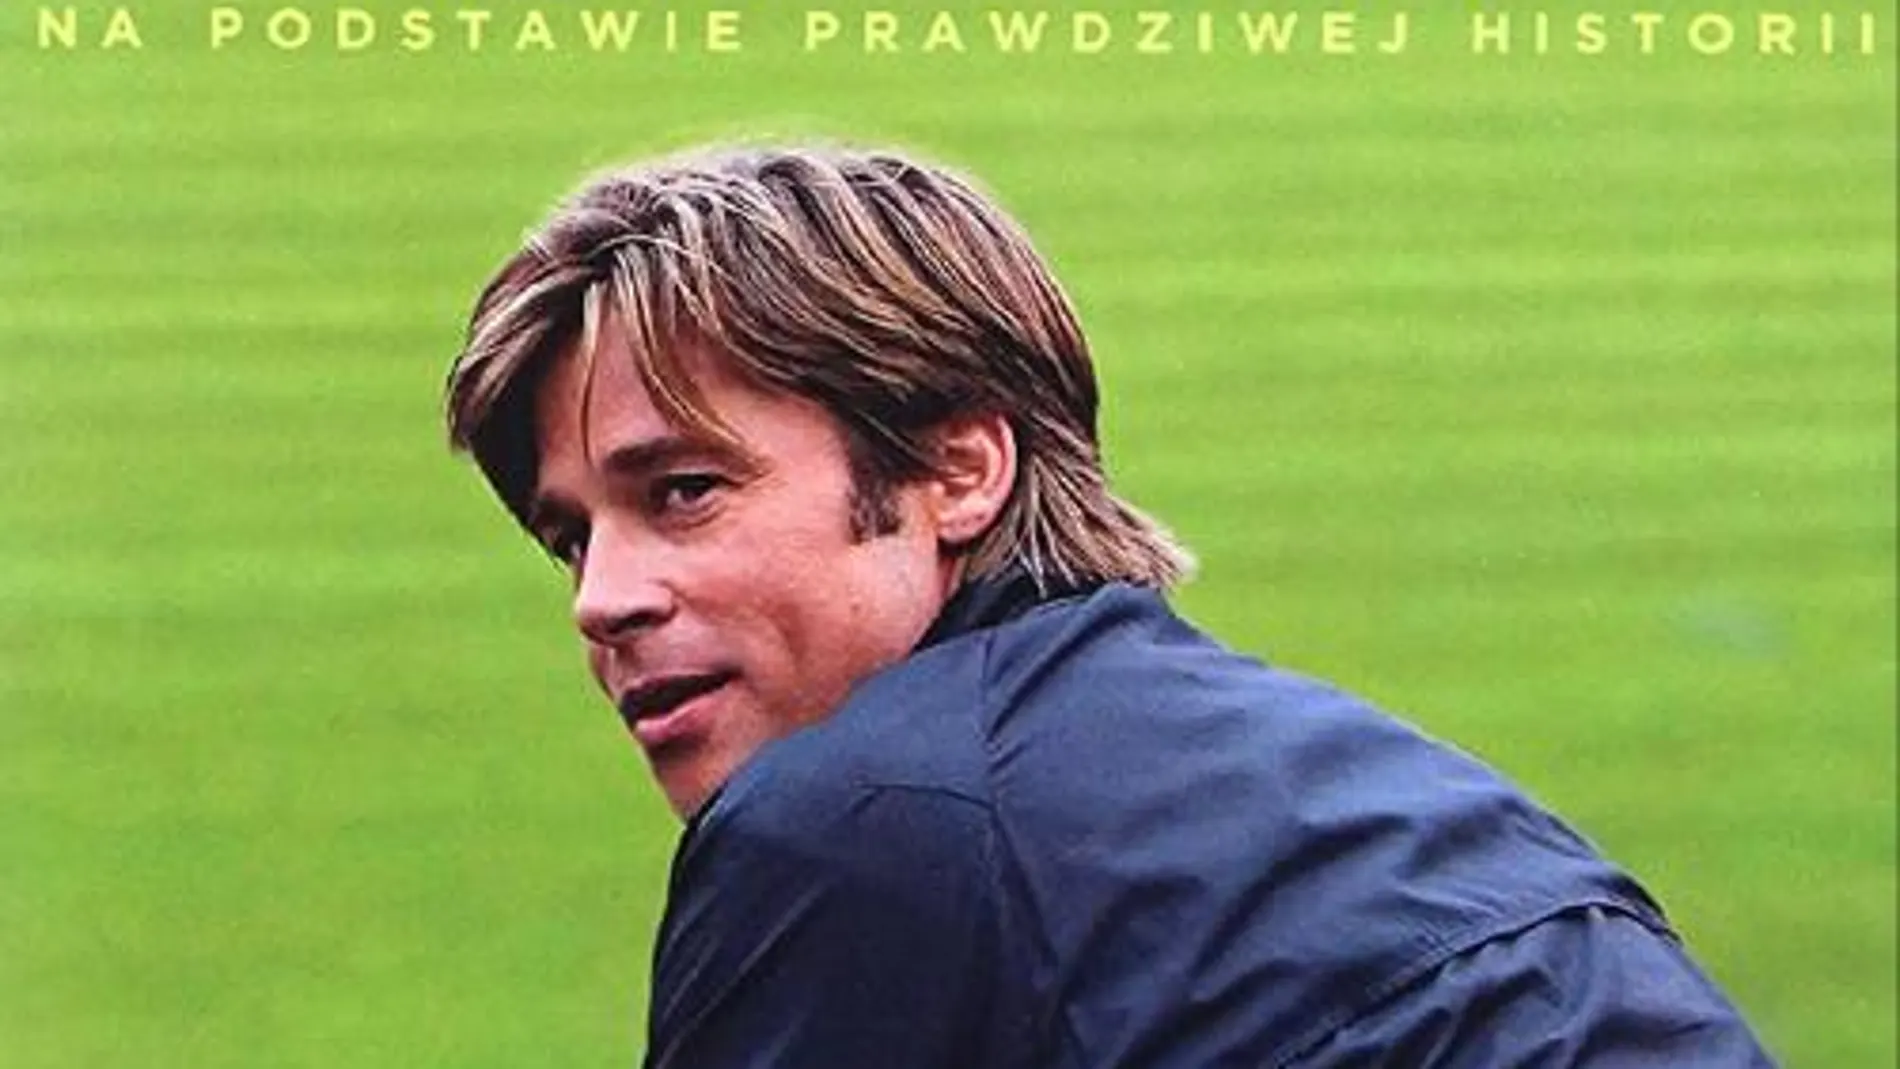 Póster de la película Moneyball, mostrando a Brad Pitt como Billy Beane